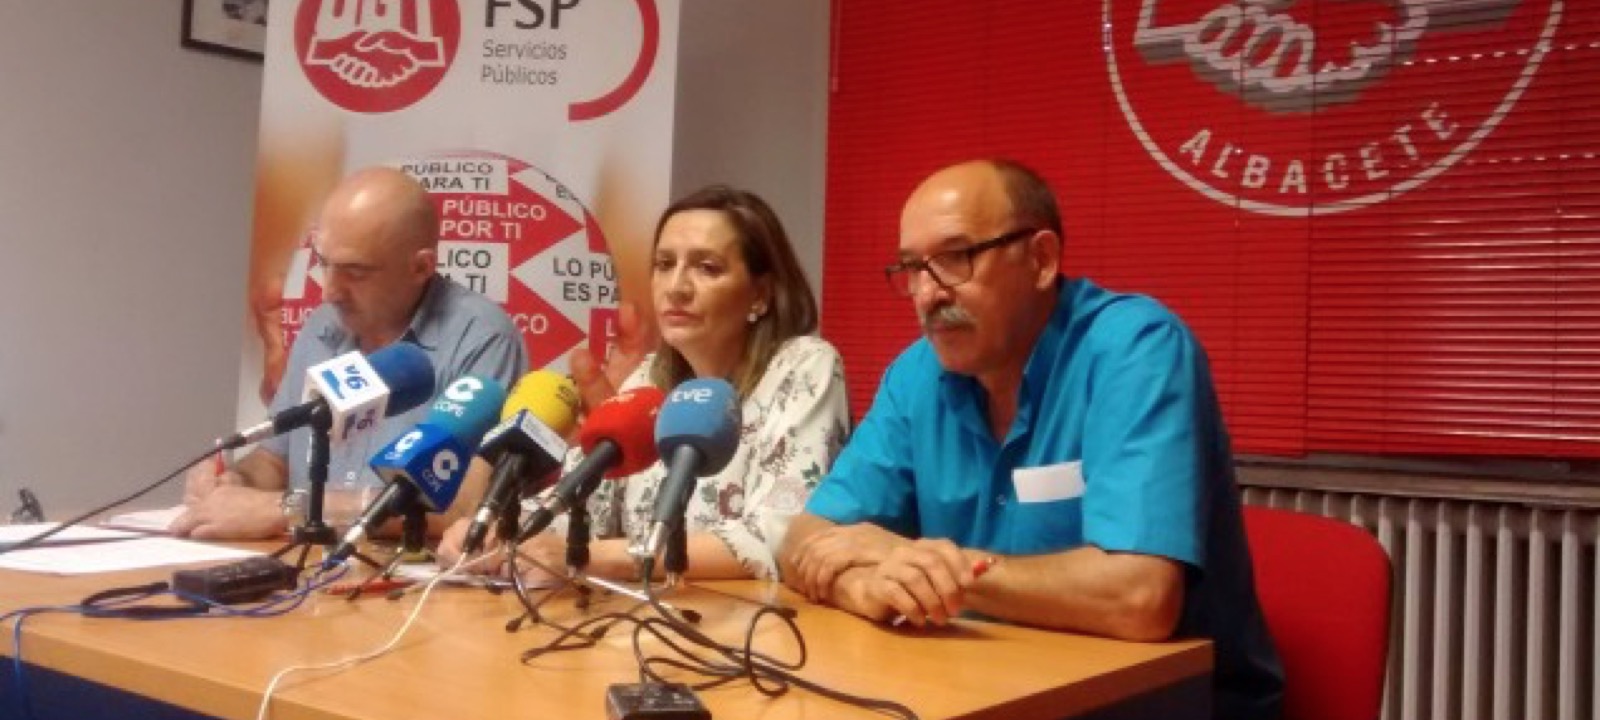 Imagen de la rueda de prensa de FSP UGT Albacete. Oposiciones Diputación Albacete.